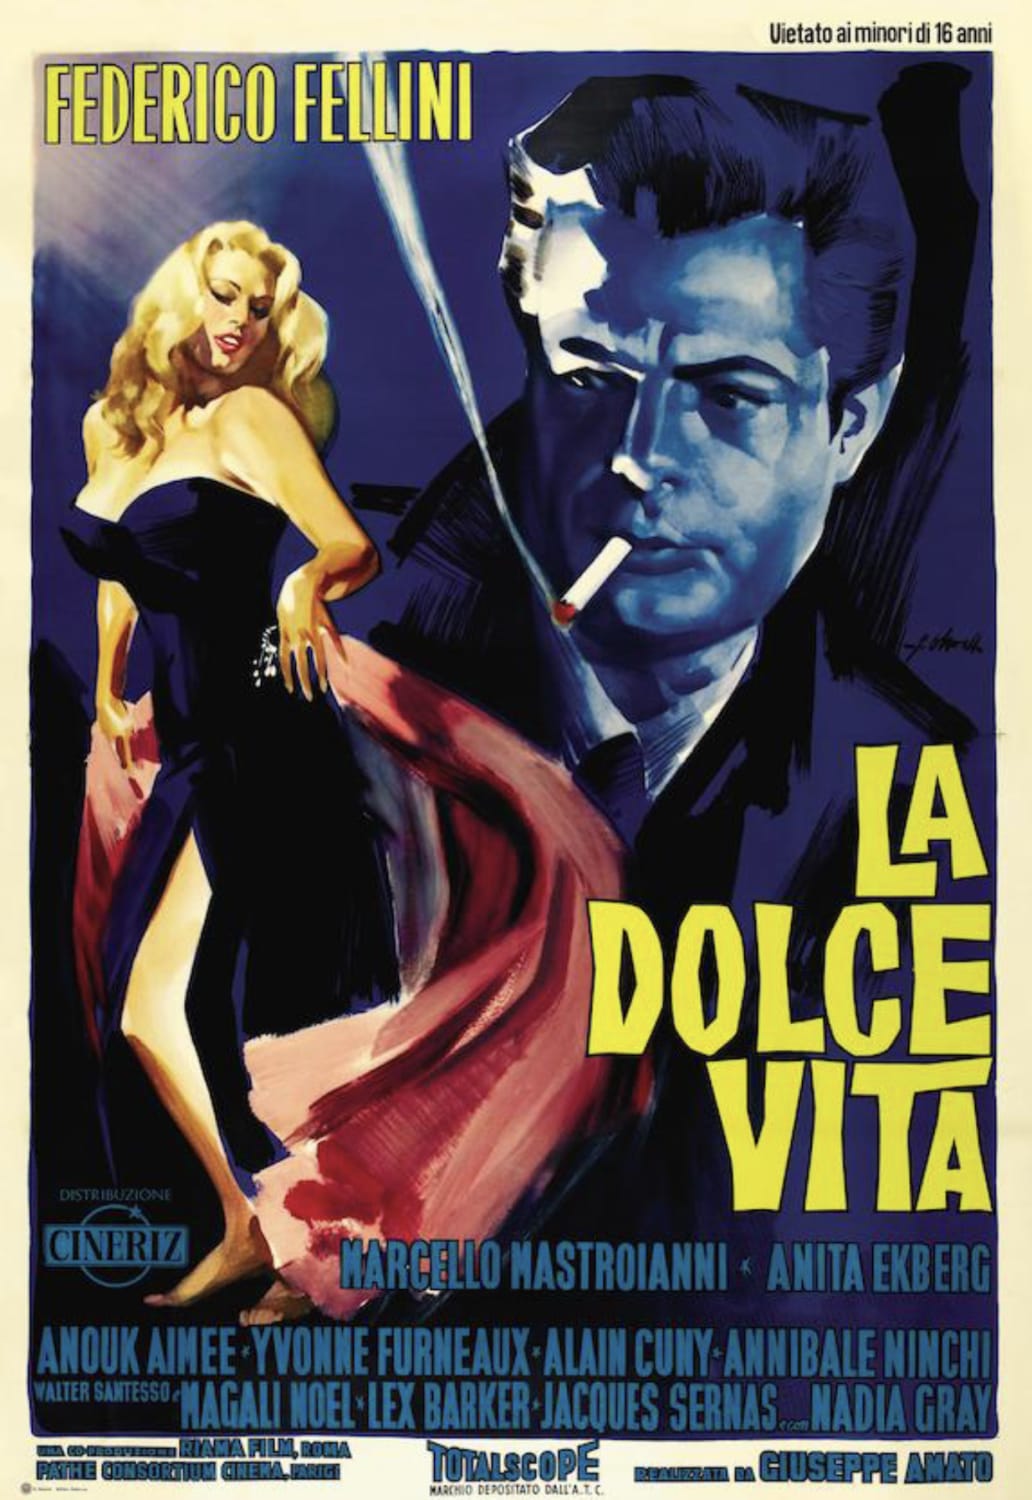 BTD - Marcello Mastroianni - LA DOLCE VITA - 1960 - Italian release poster - Art by Giorgio Olivetti